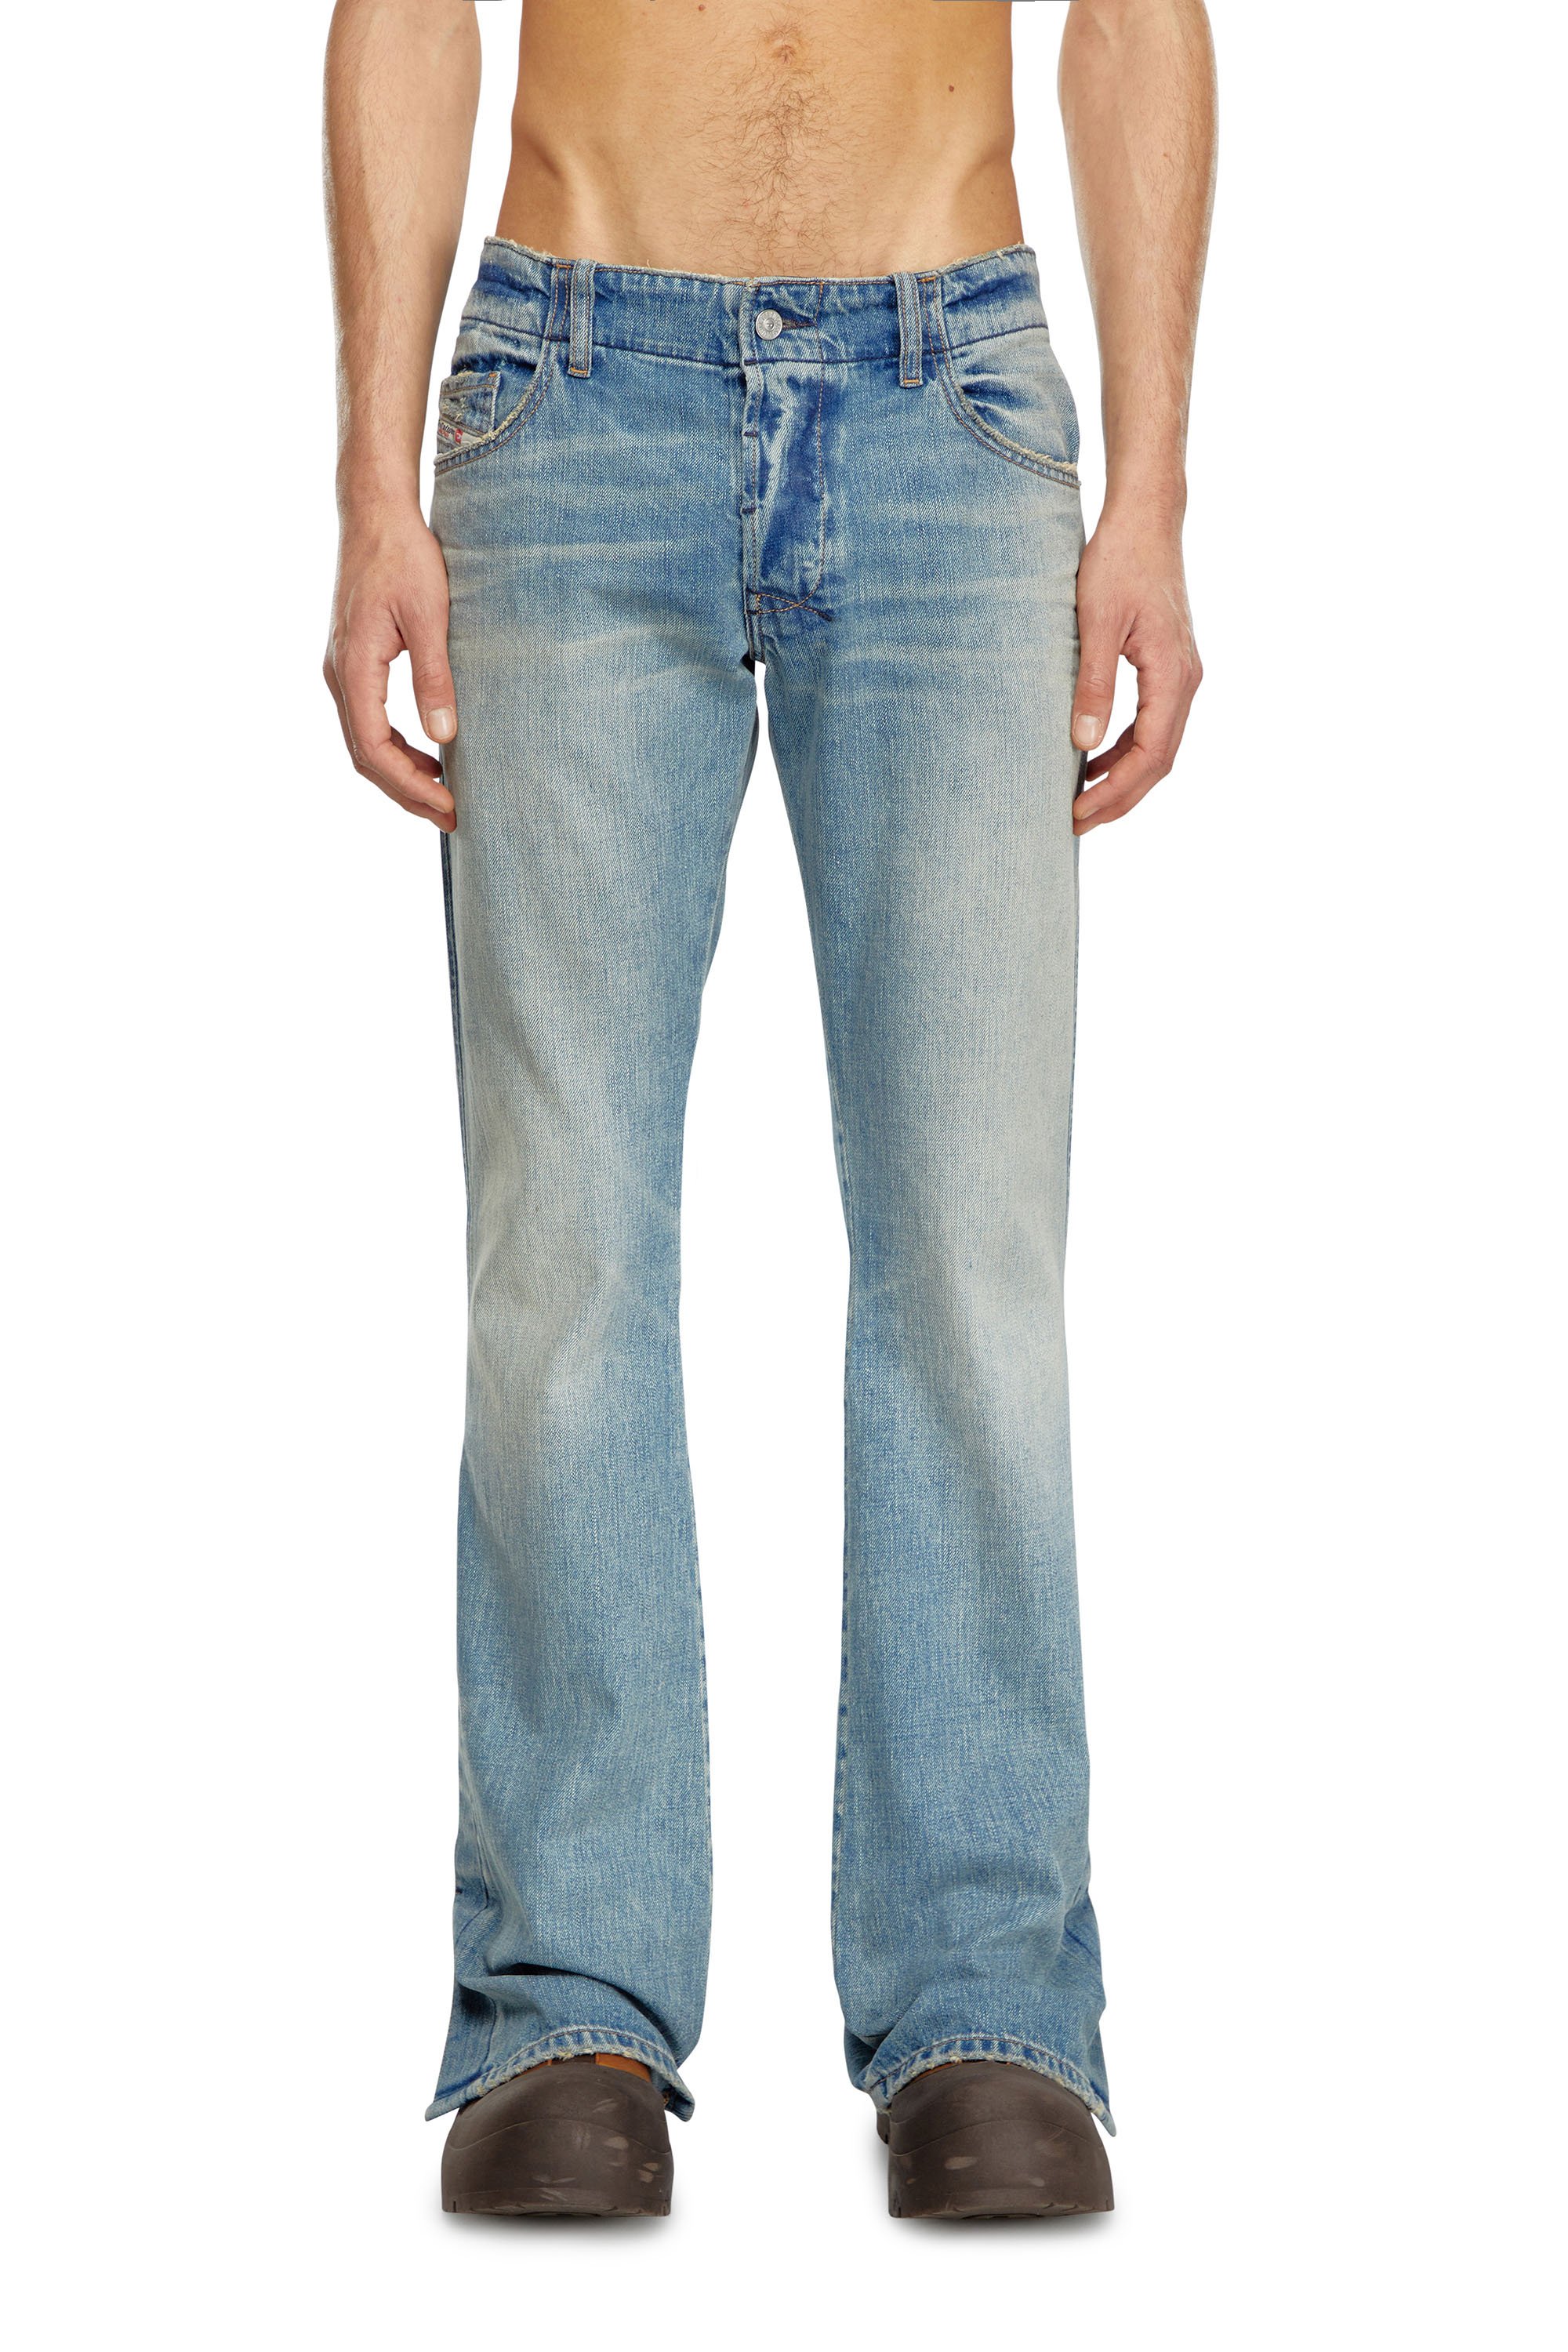 Diesel - Bootcut Jeans D-Backler 0GRDN, Hombre Bootcut Jeans - D-Backler in Azul marino - Image 2